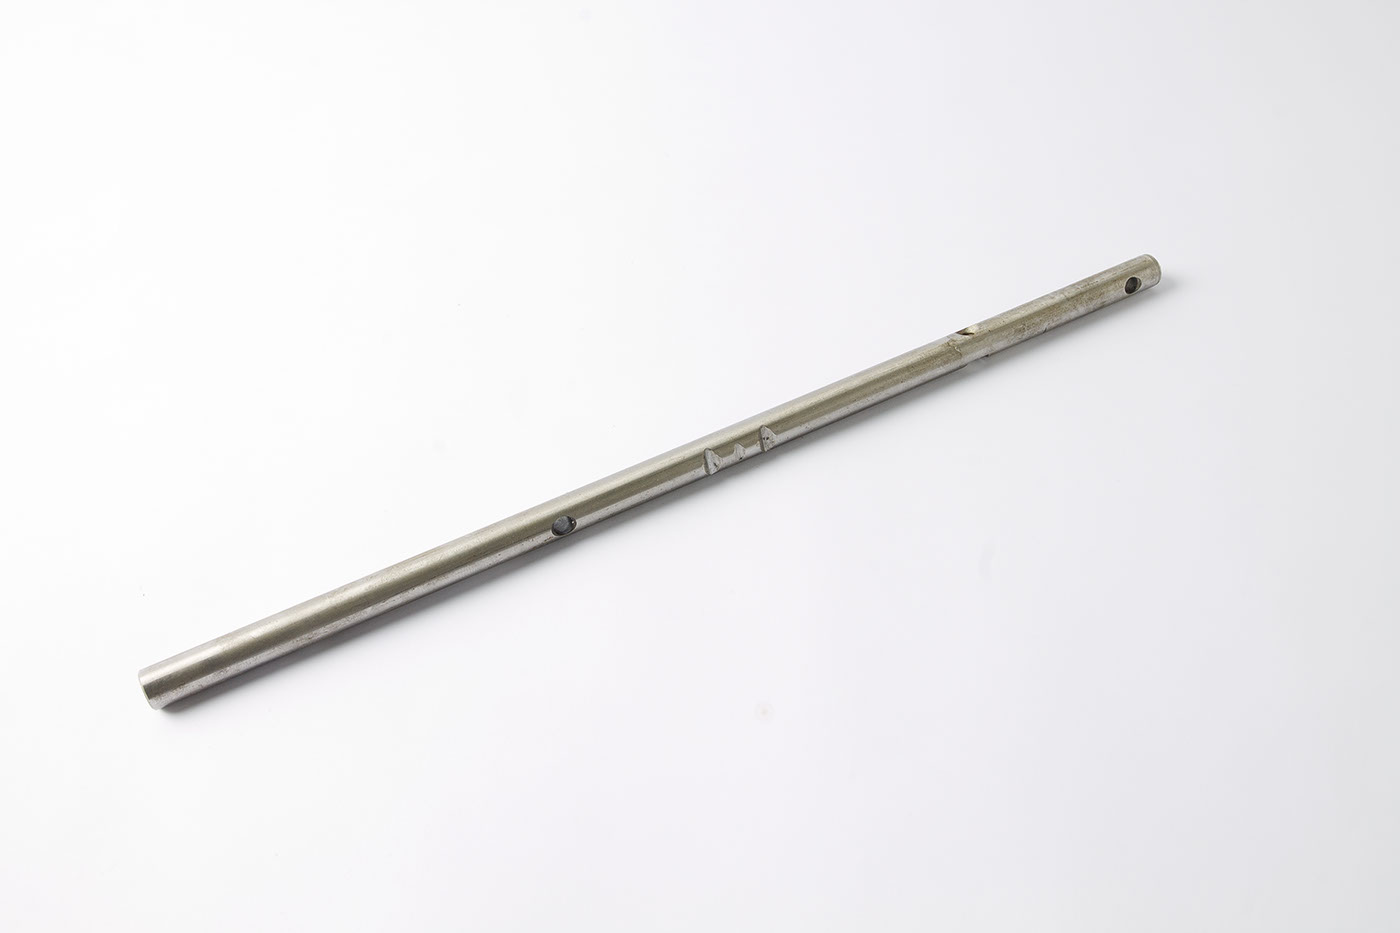 Welle Schaltgabel
Selector fork rod
Arbre fourchette de sélec